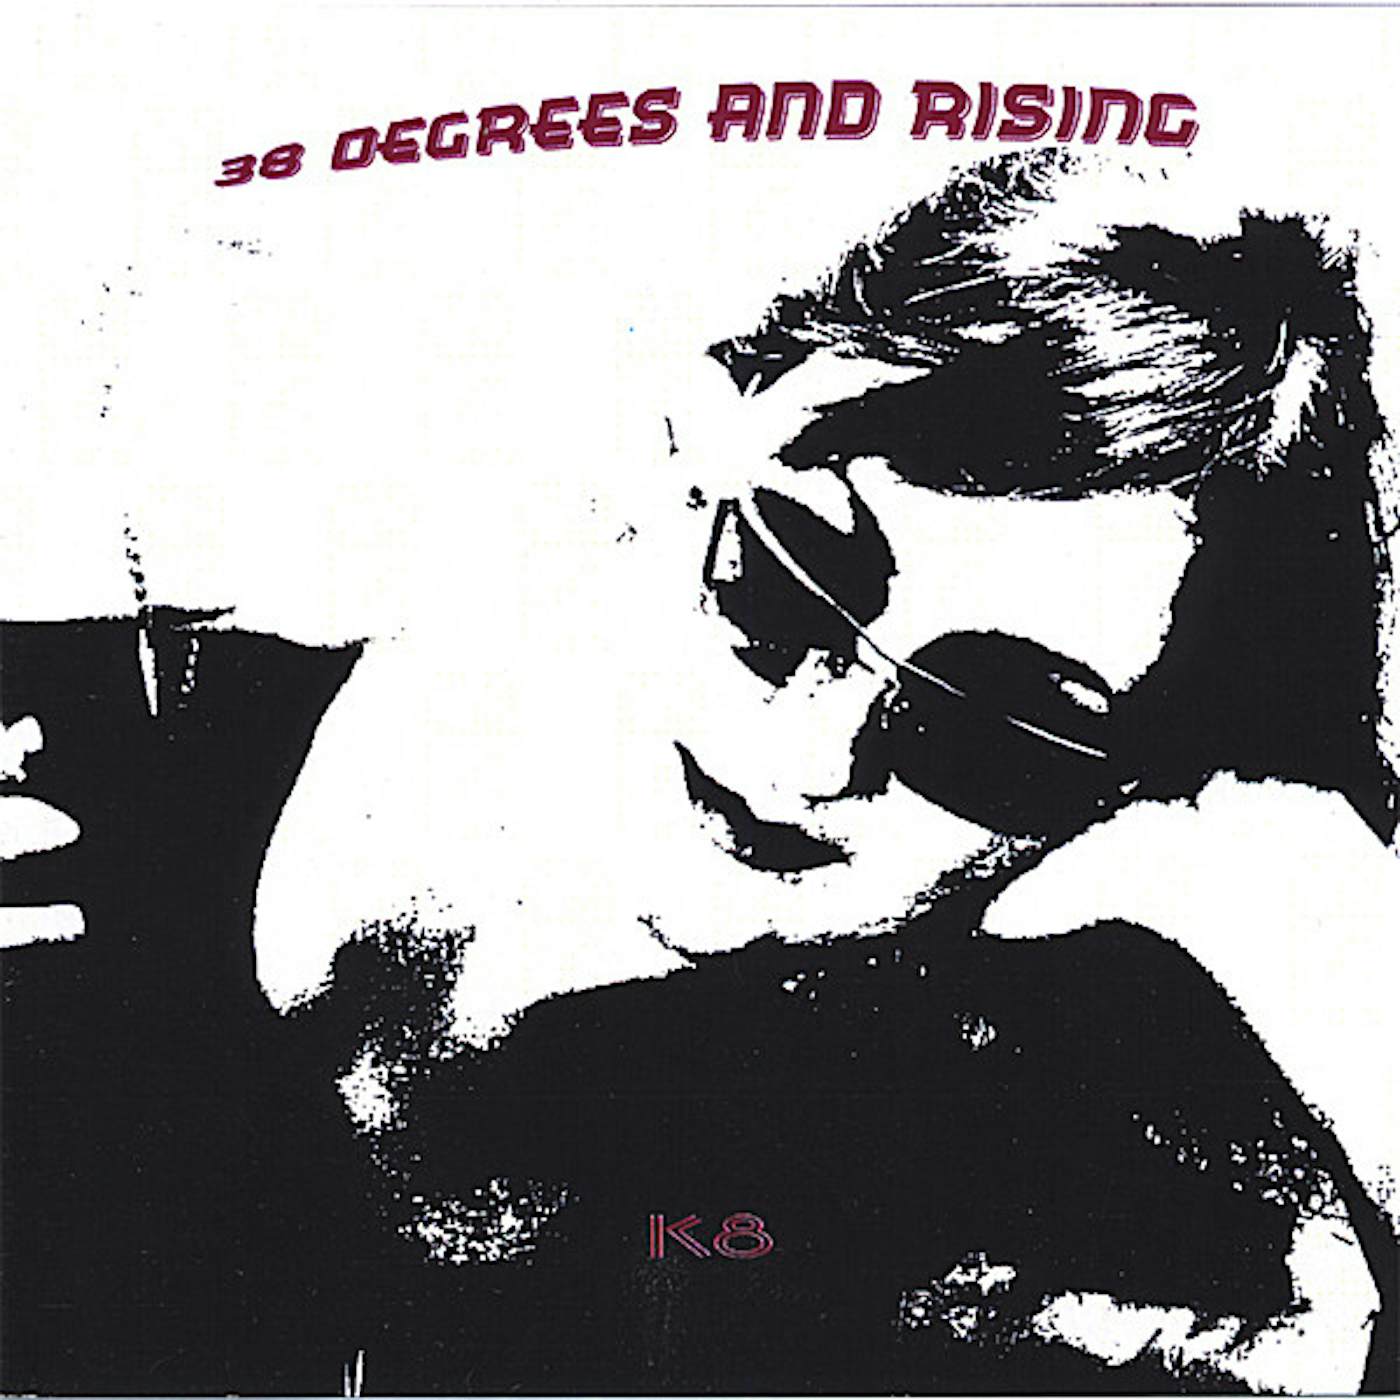 k8 38 DEGREES & RISING CD